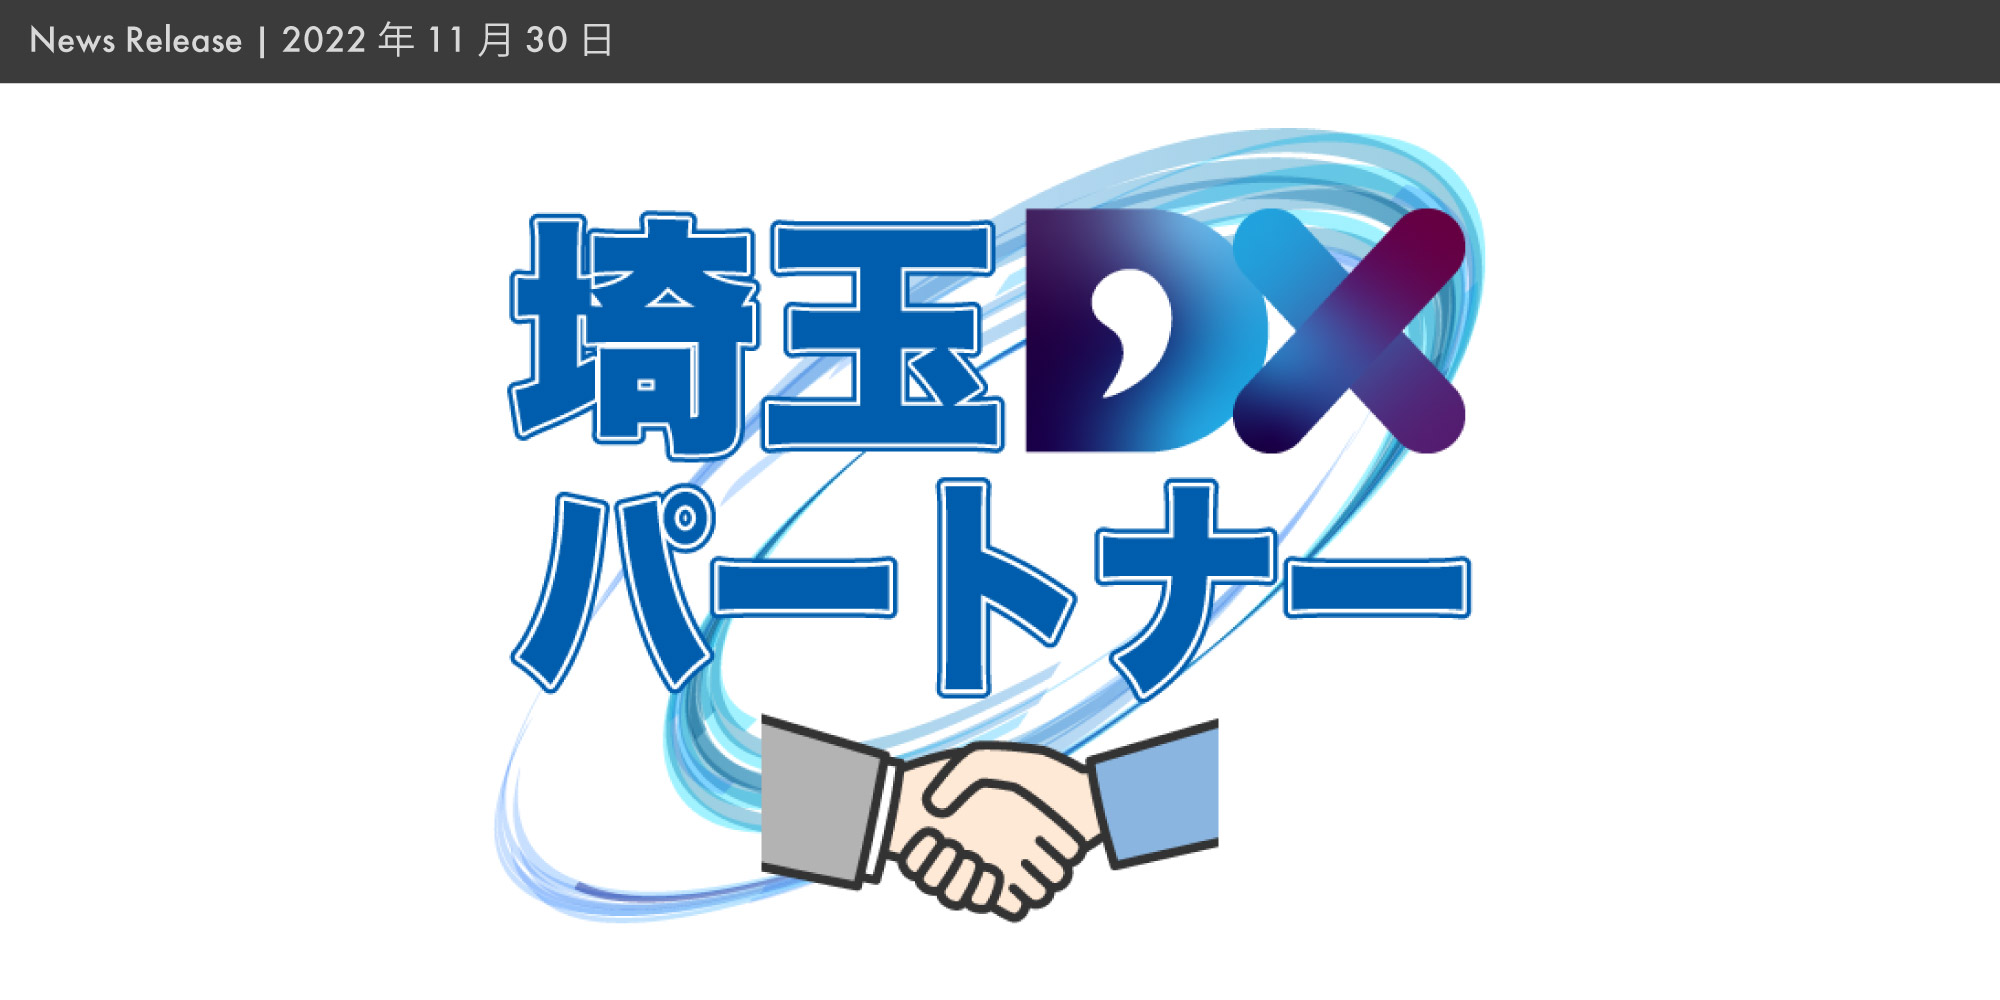 埼玉県産業振興公社による「埼玉DXパートナー」に登録
    